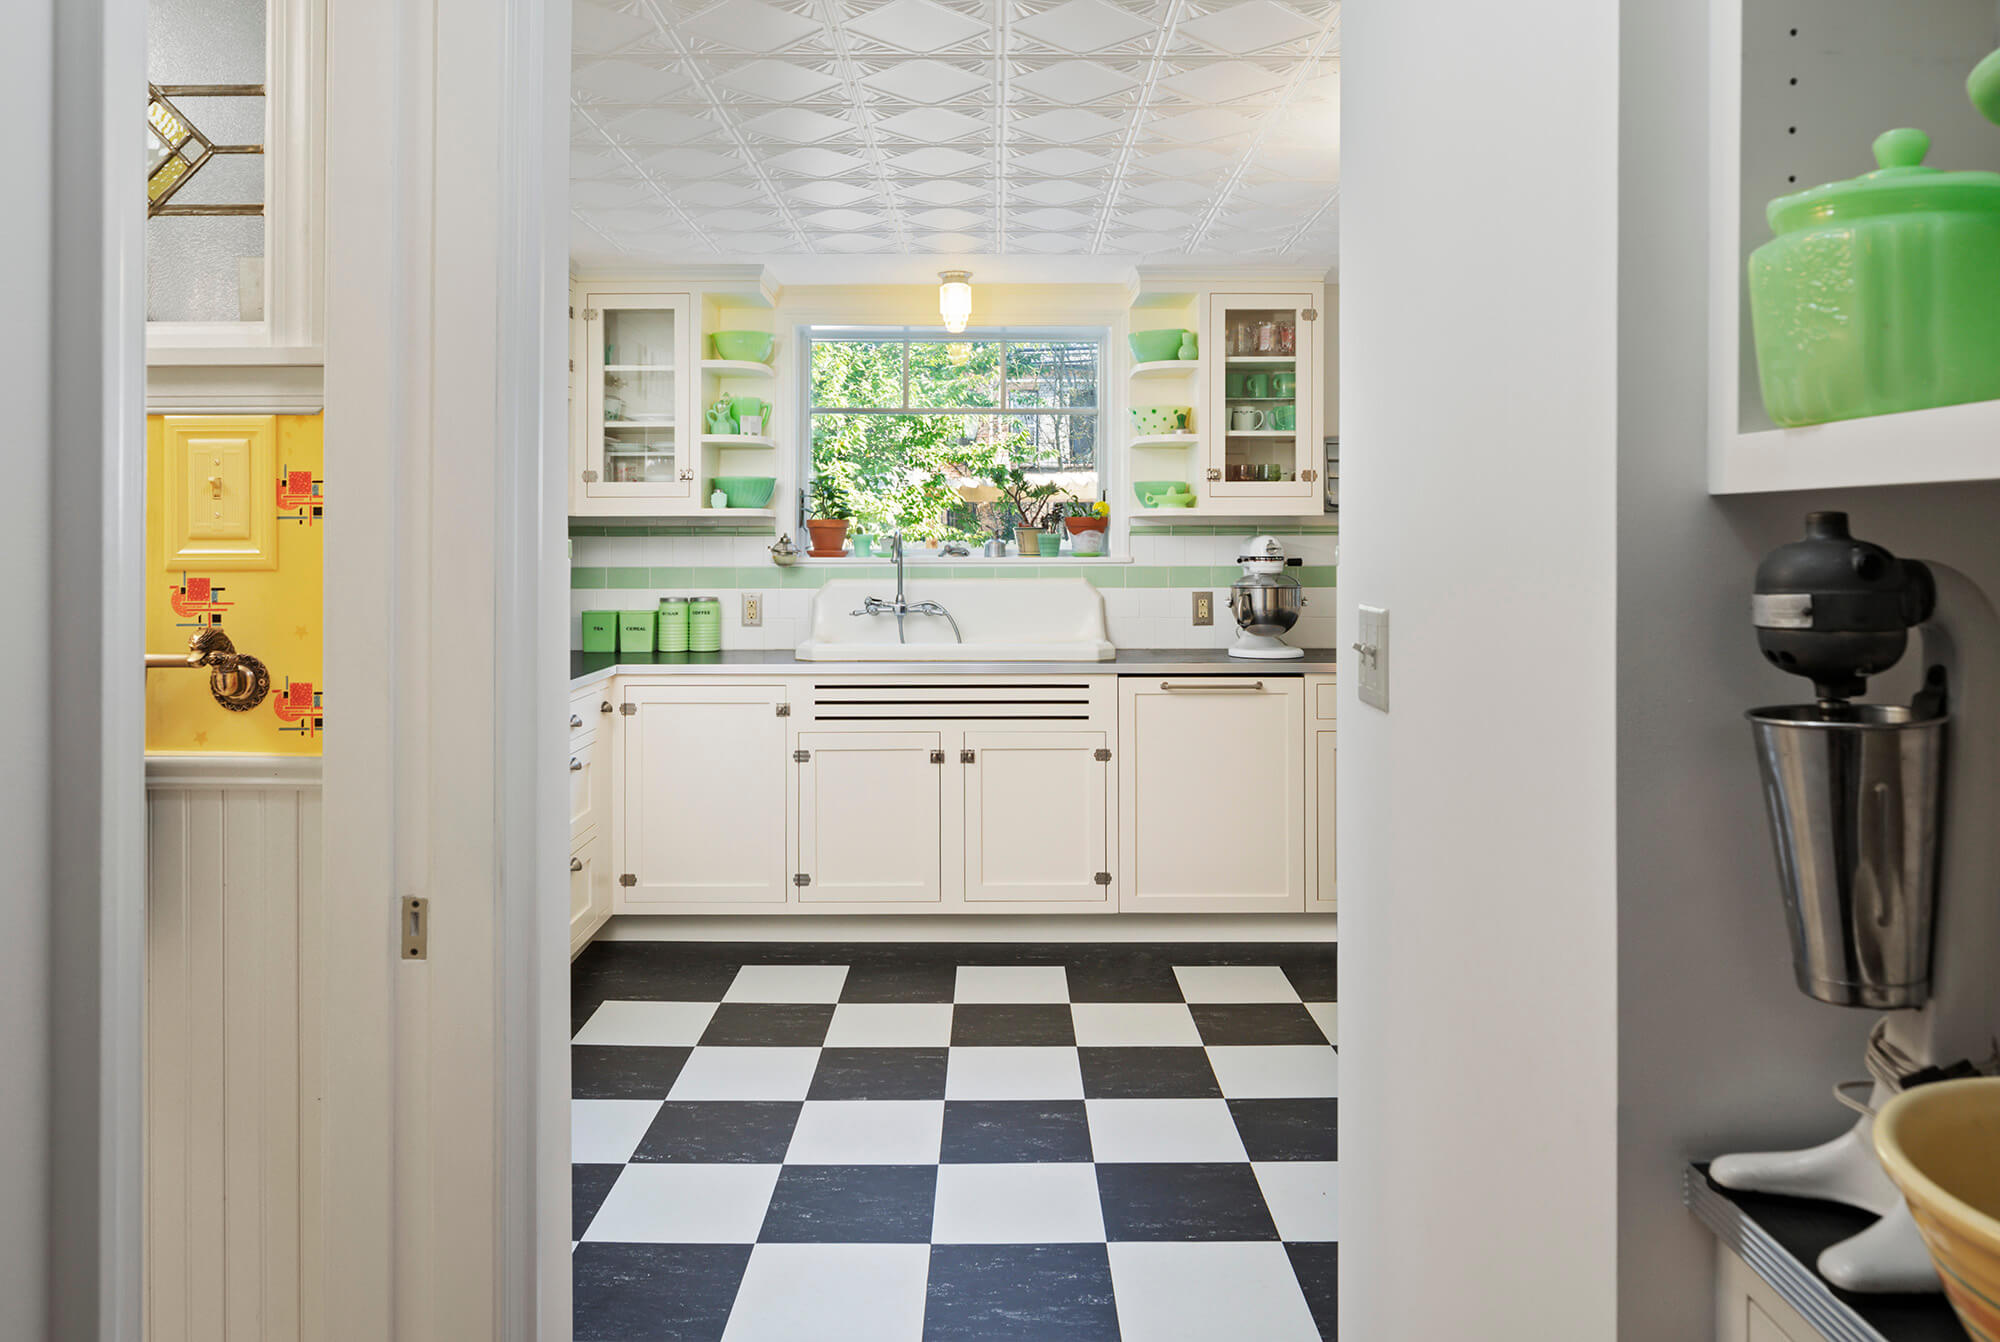 kitchen brooklyn interior design ideas